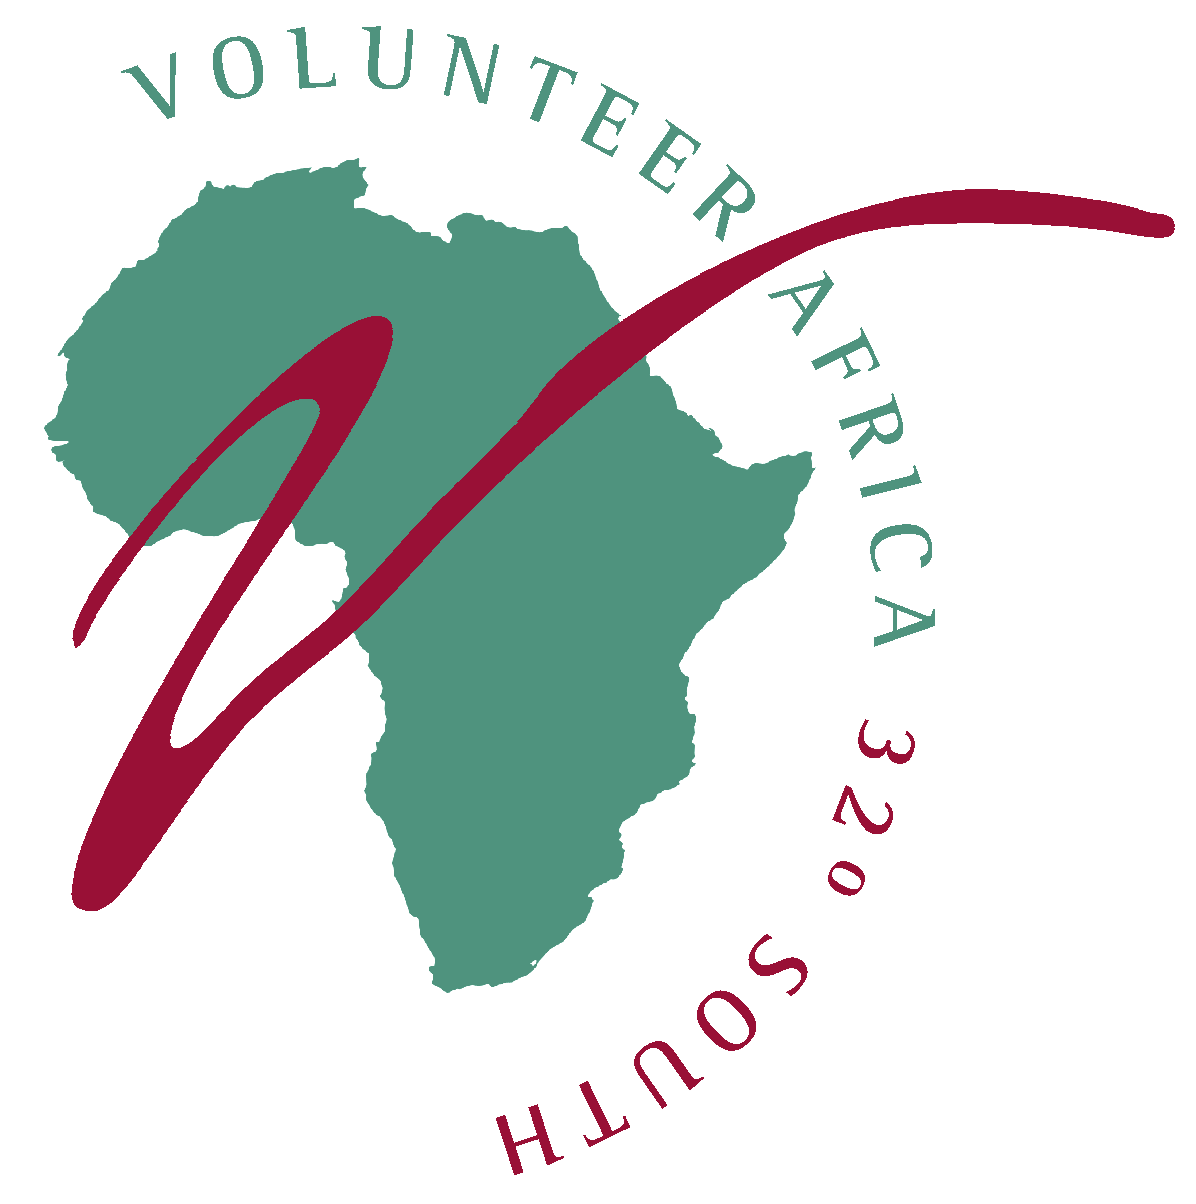 Volunteer Africa 32° South